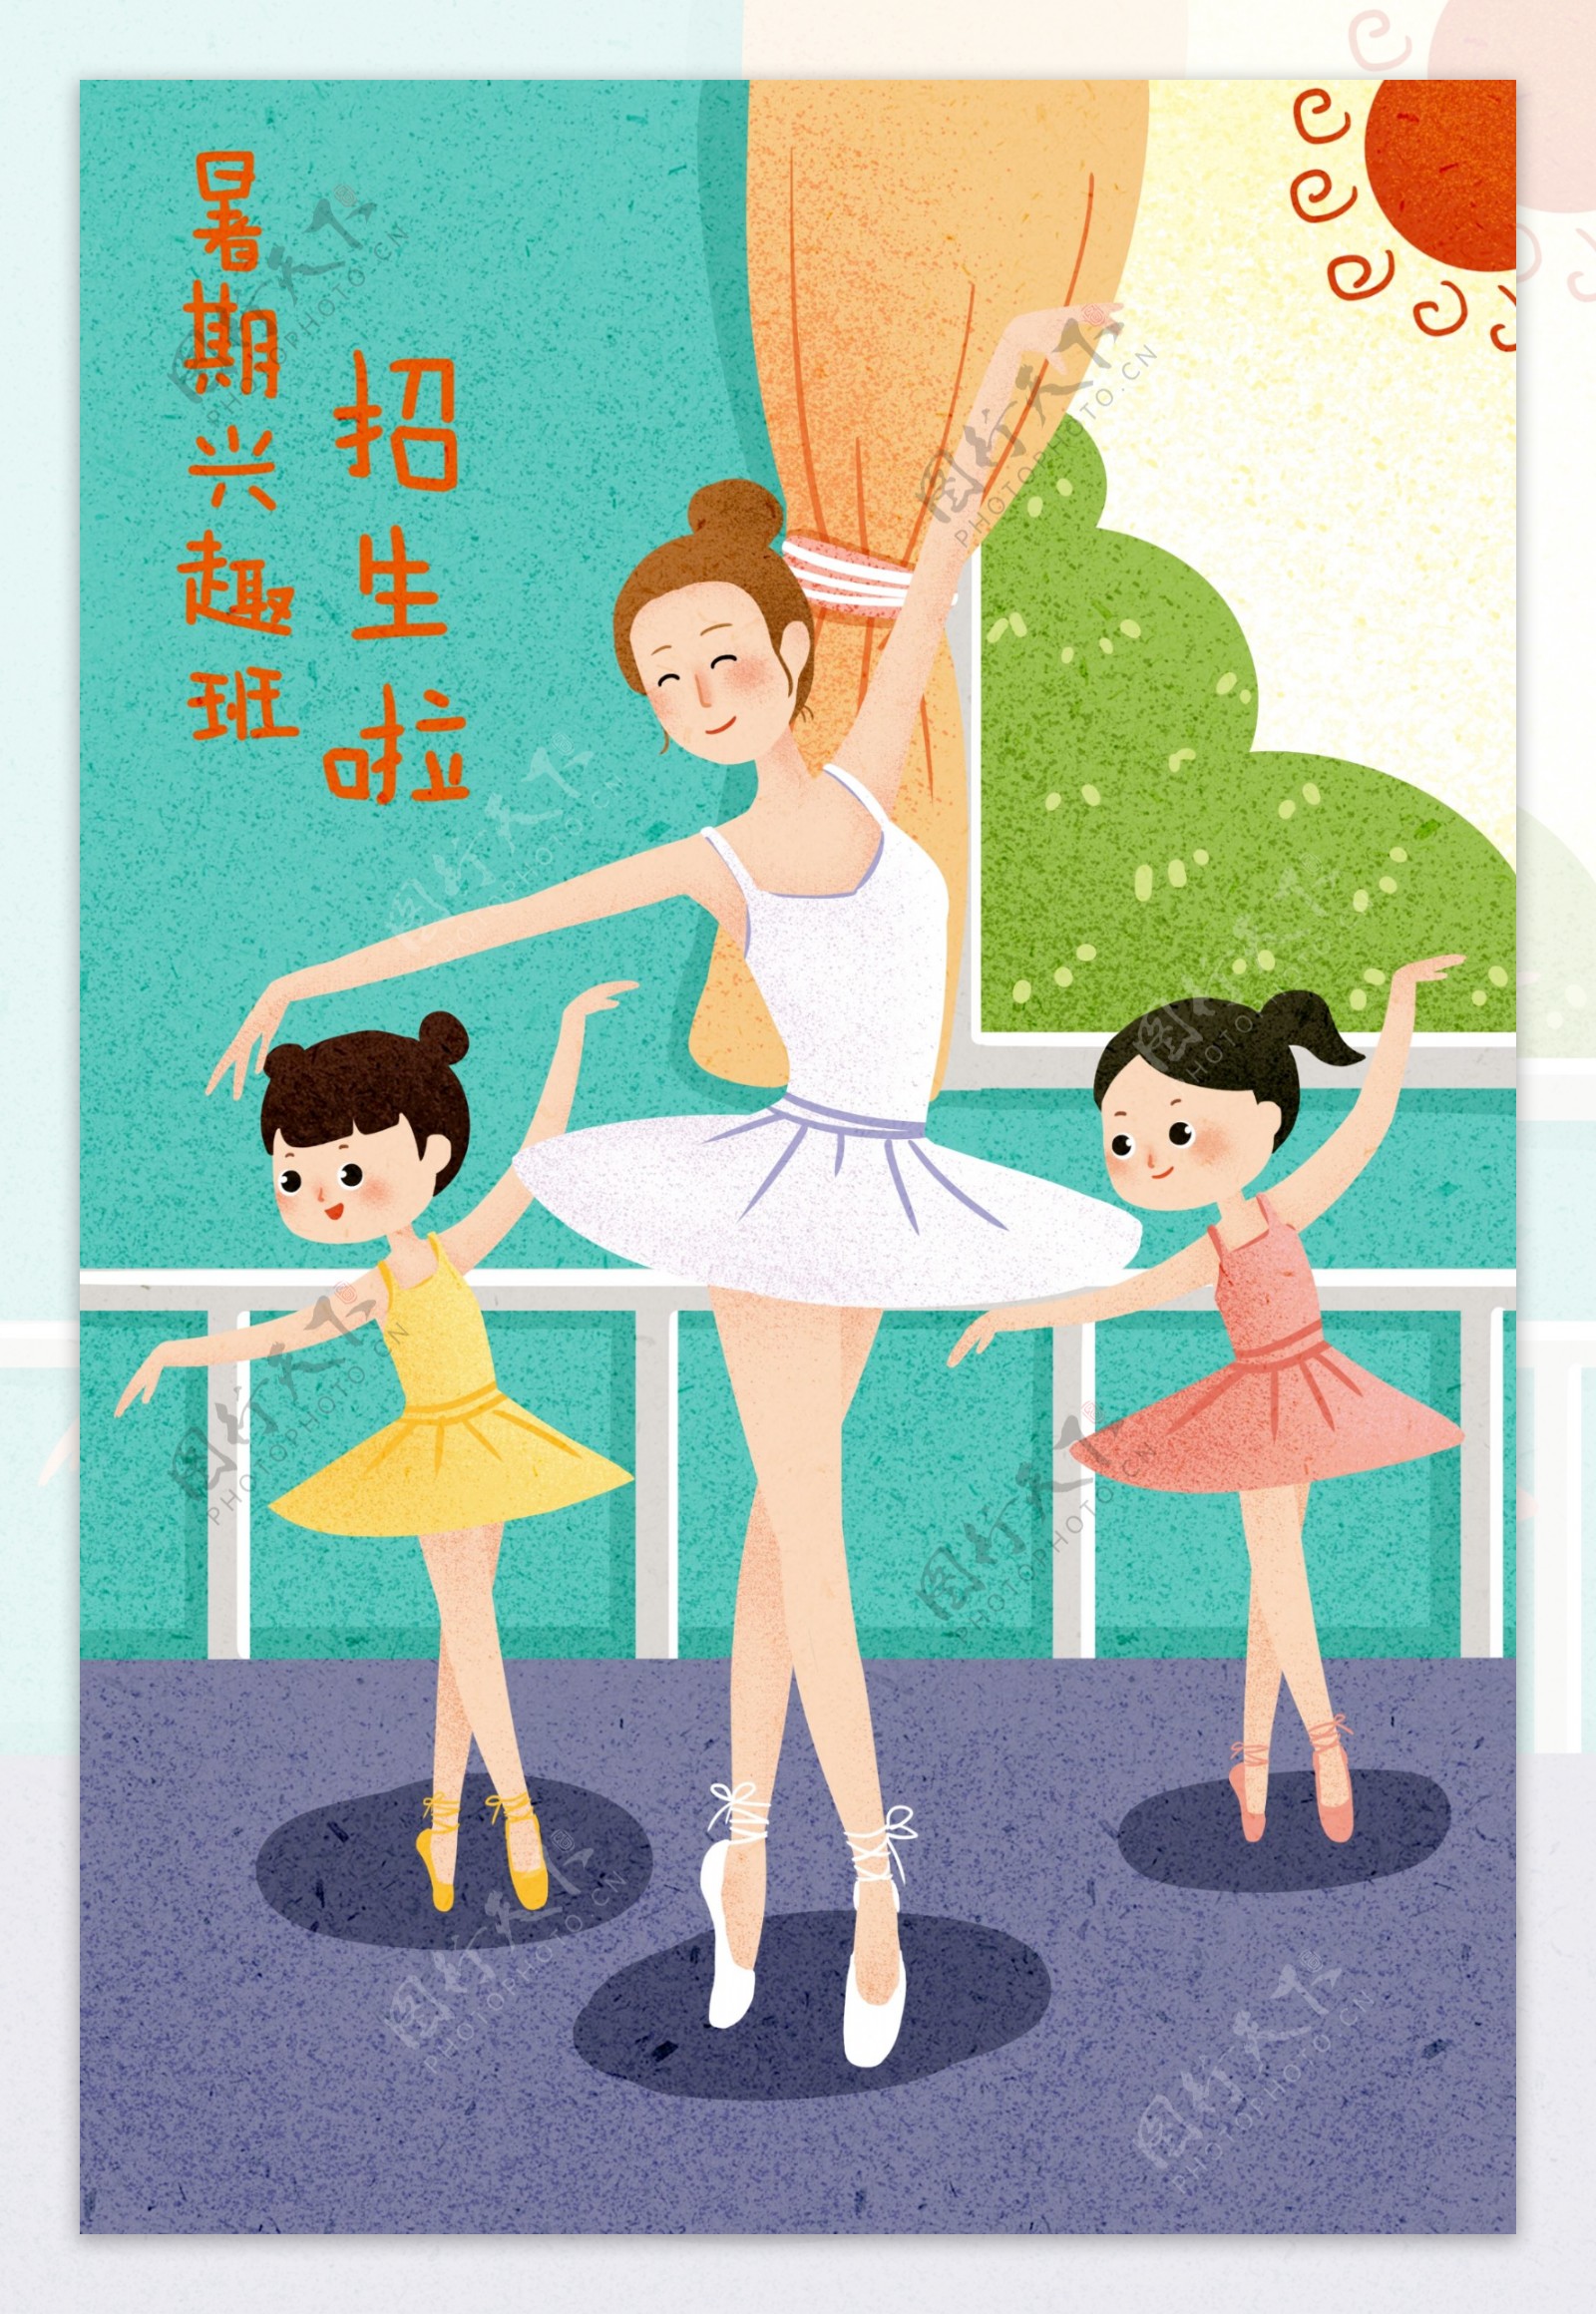 舞蹈培训人物女性插画海报素材